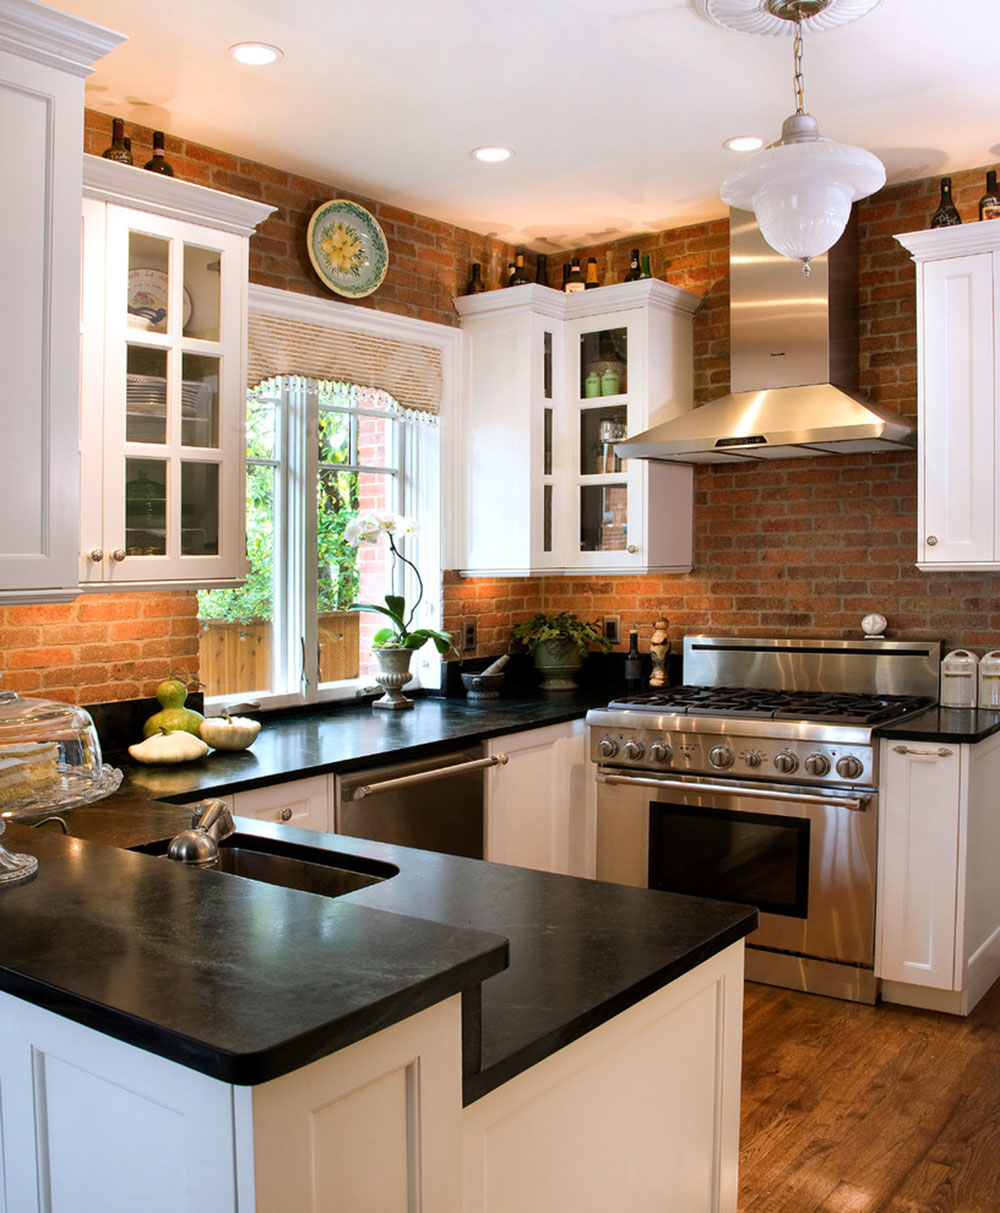 Stunning kitchen backsplash ideas